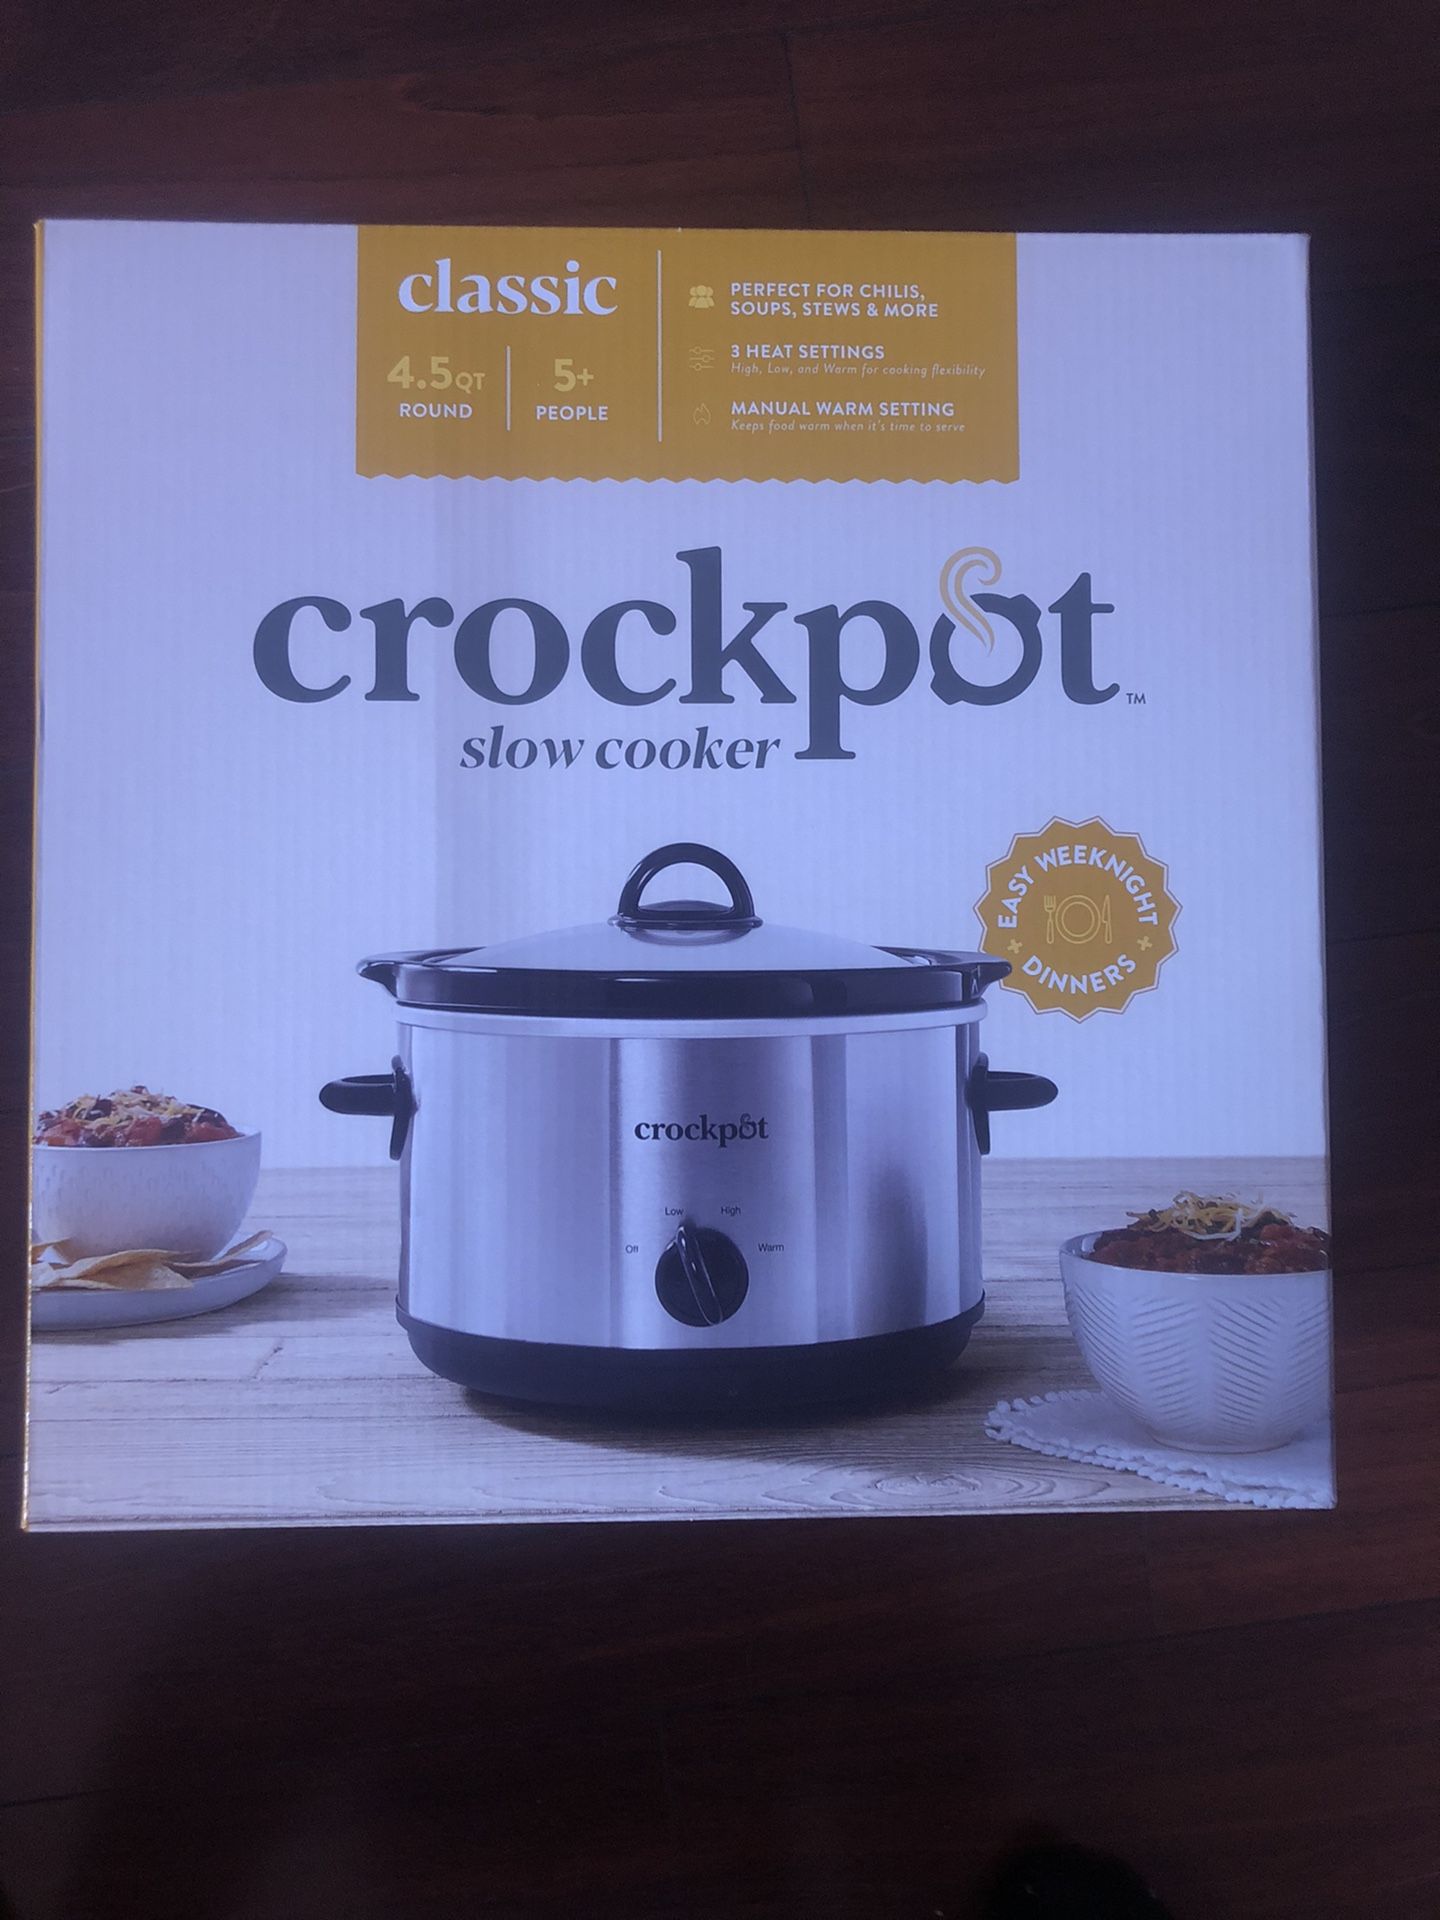 Crock Pot Slow Cooker, Classic, 4.5 Quart